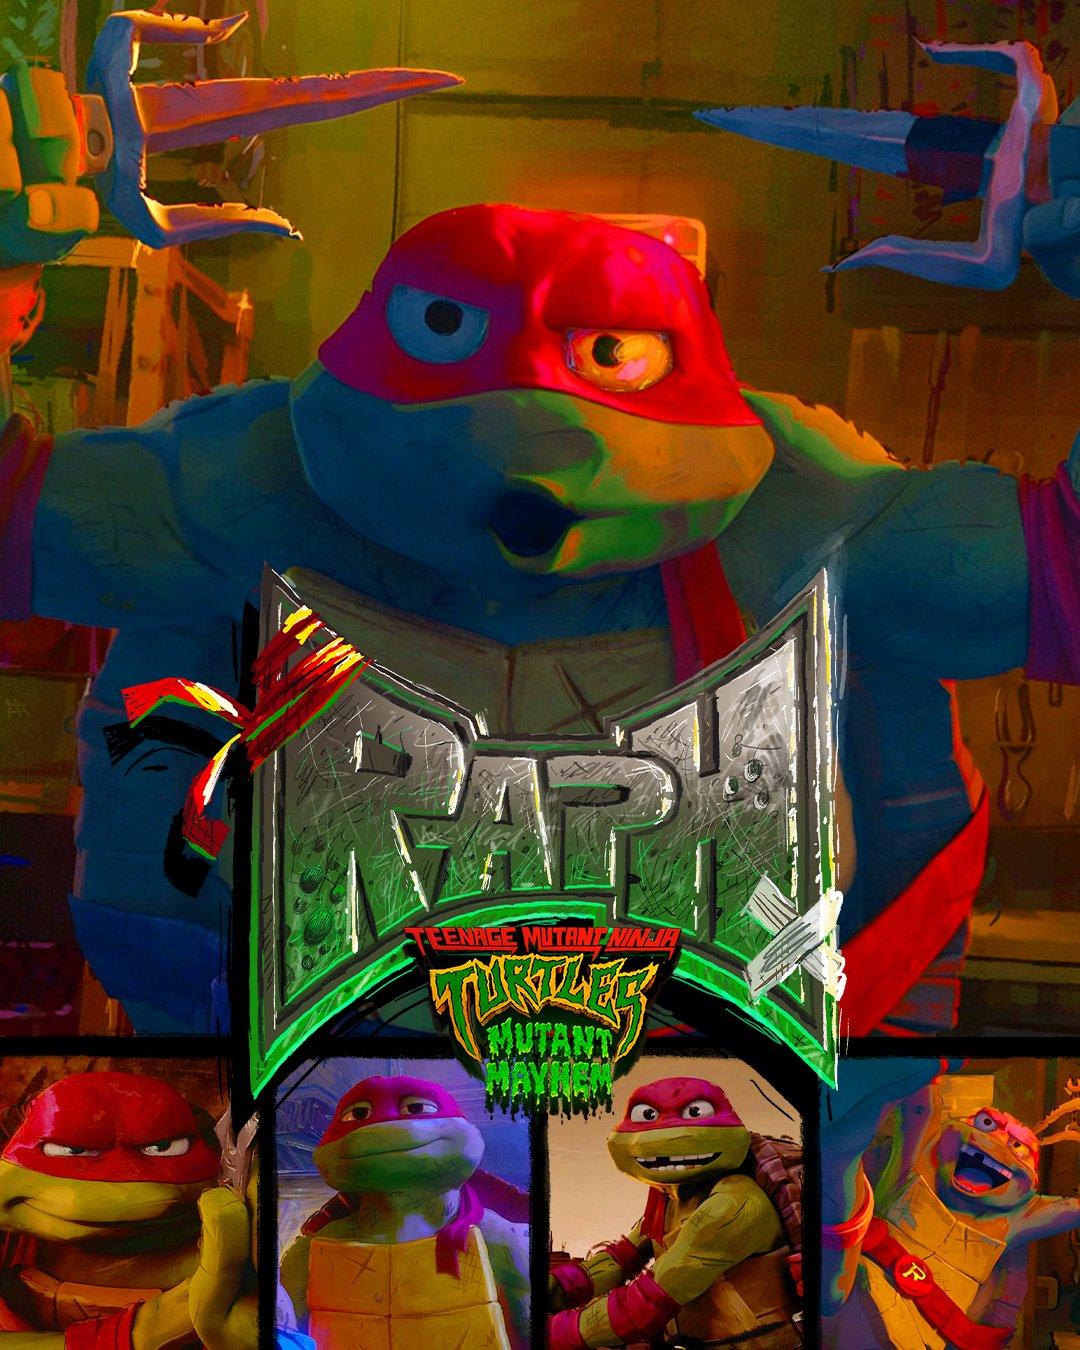 Teenage Mutant Ninja Turtles: Mutant Mayhem Character Posters Released